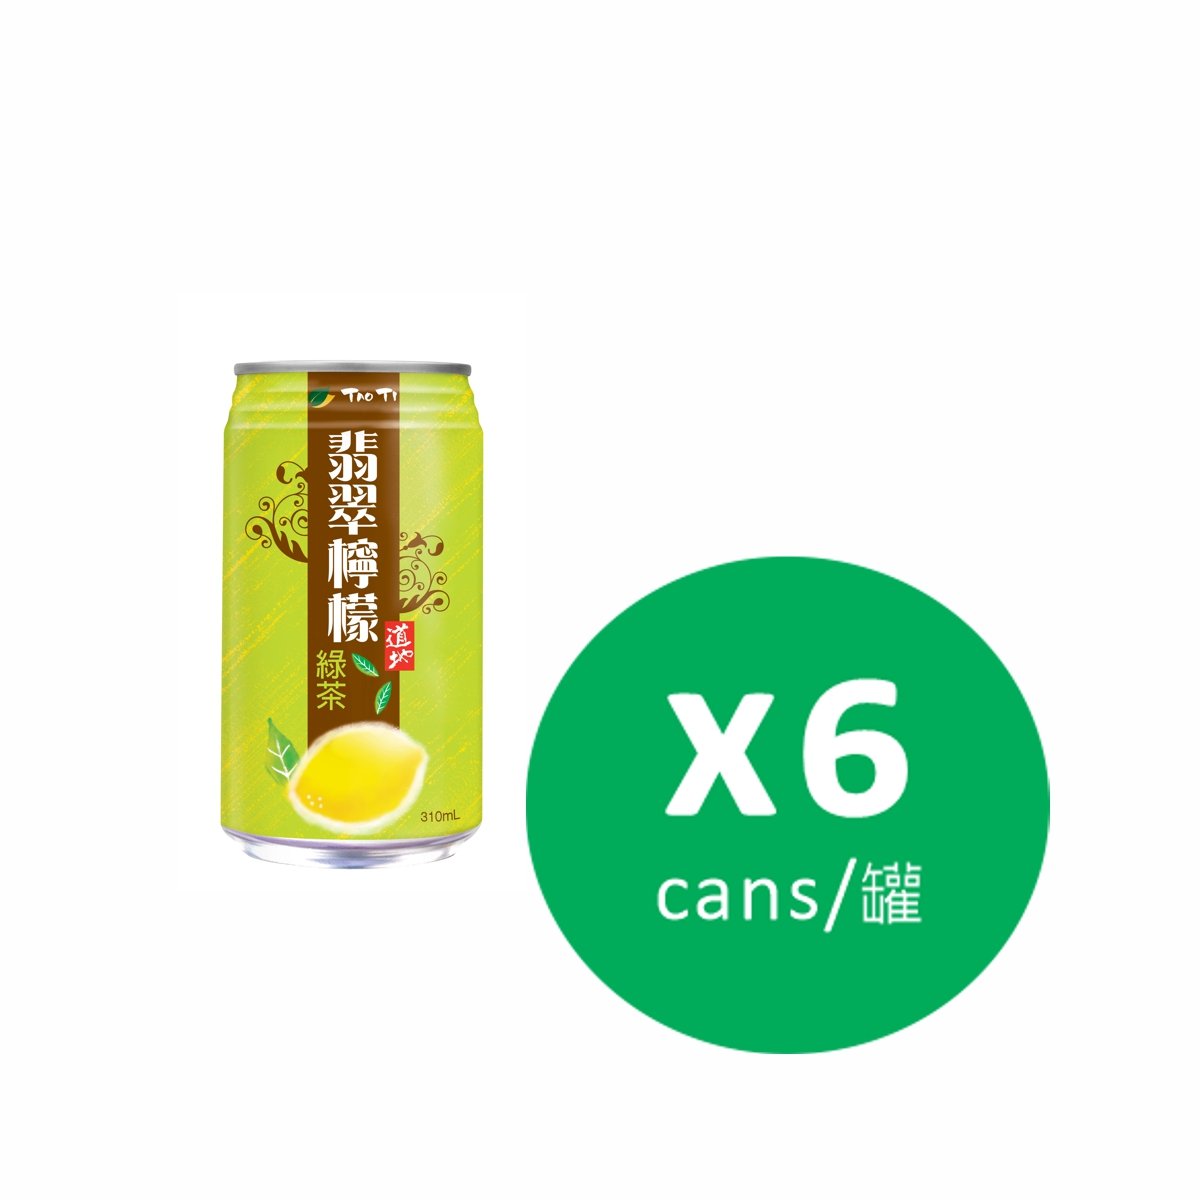 翡翠檸檬綠茶